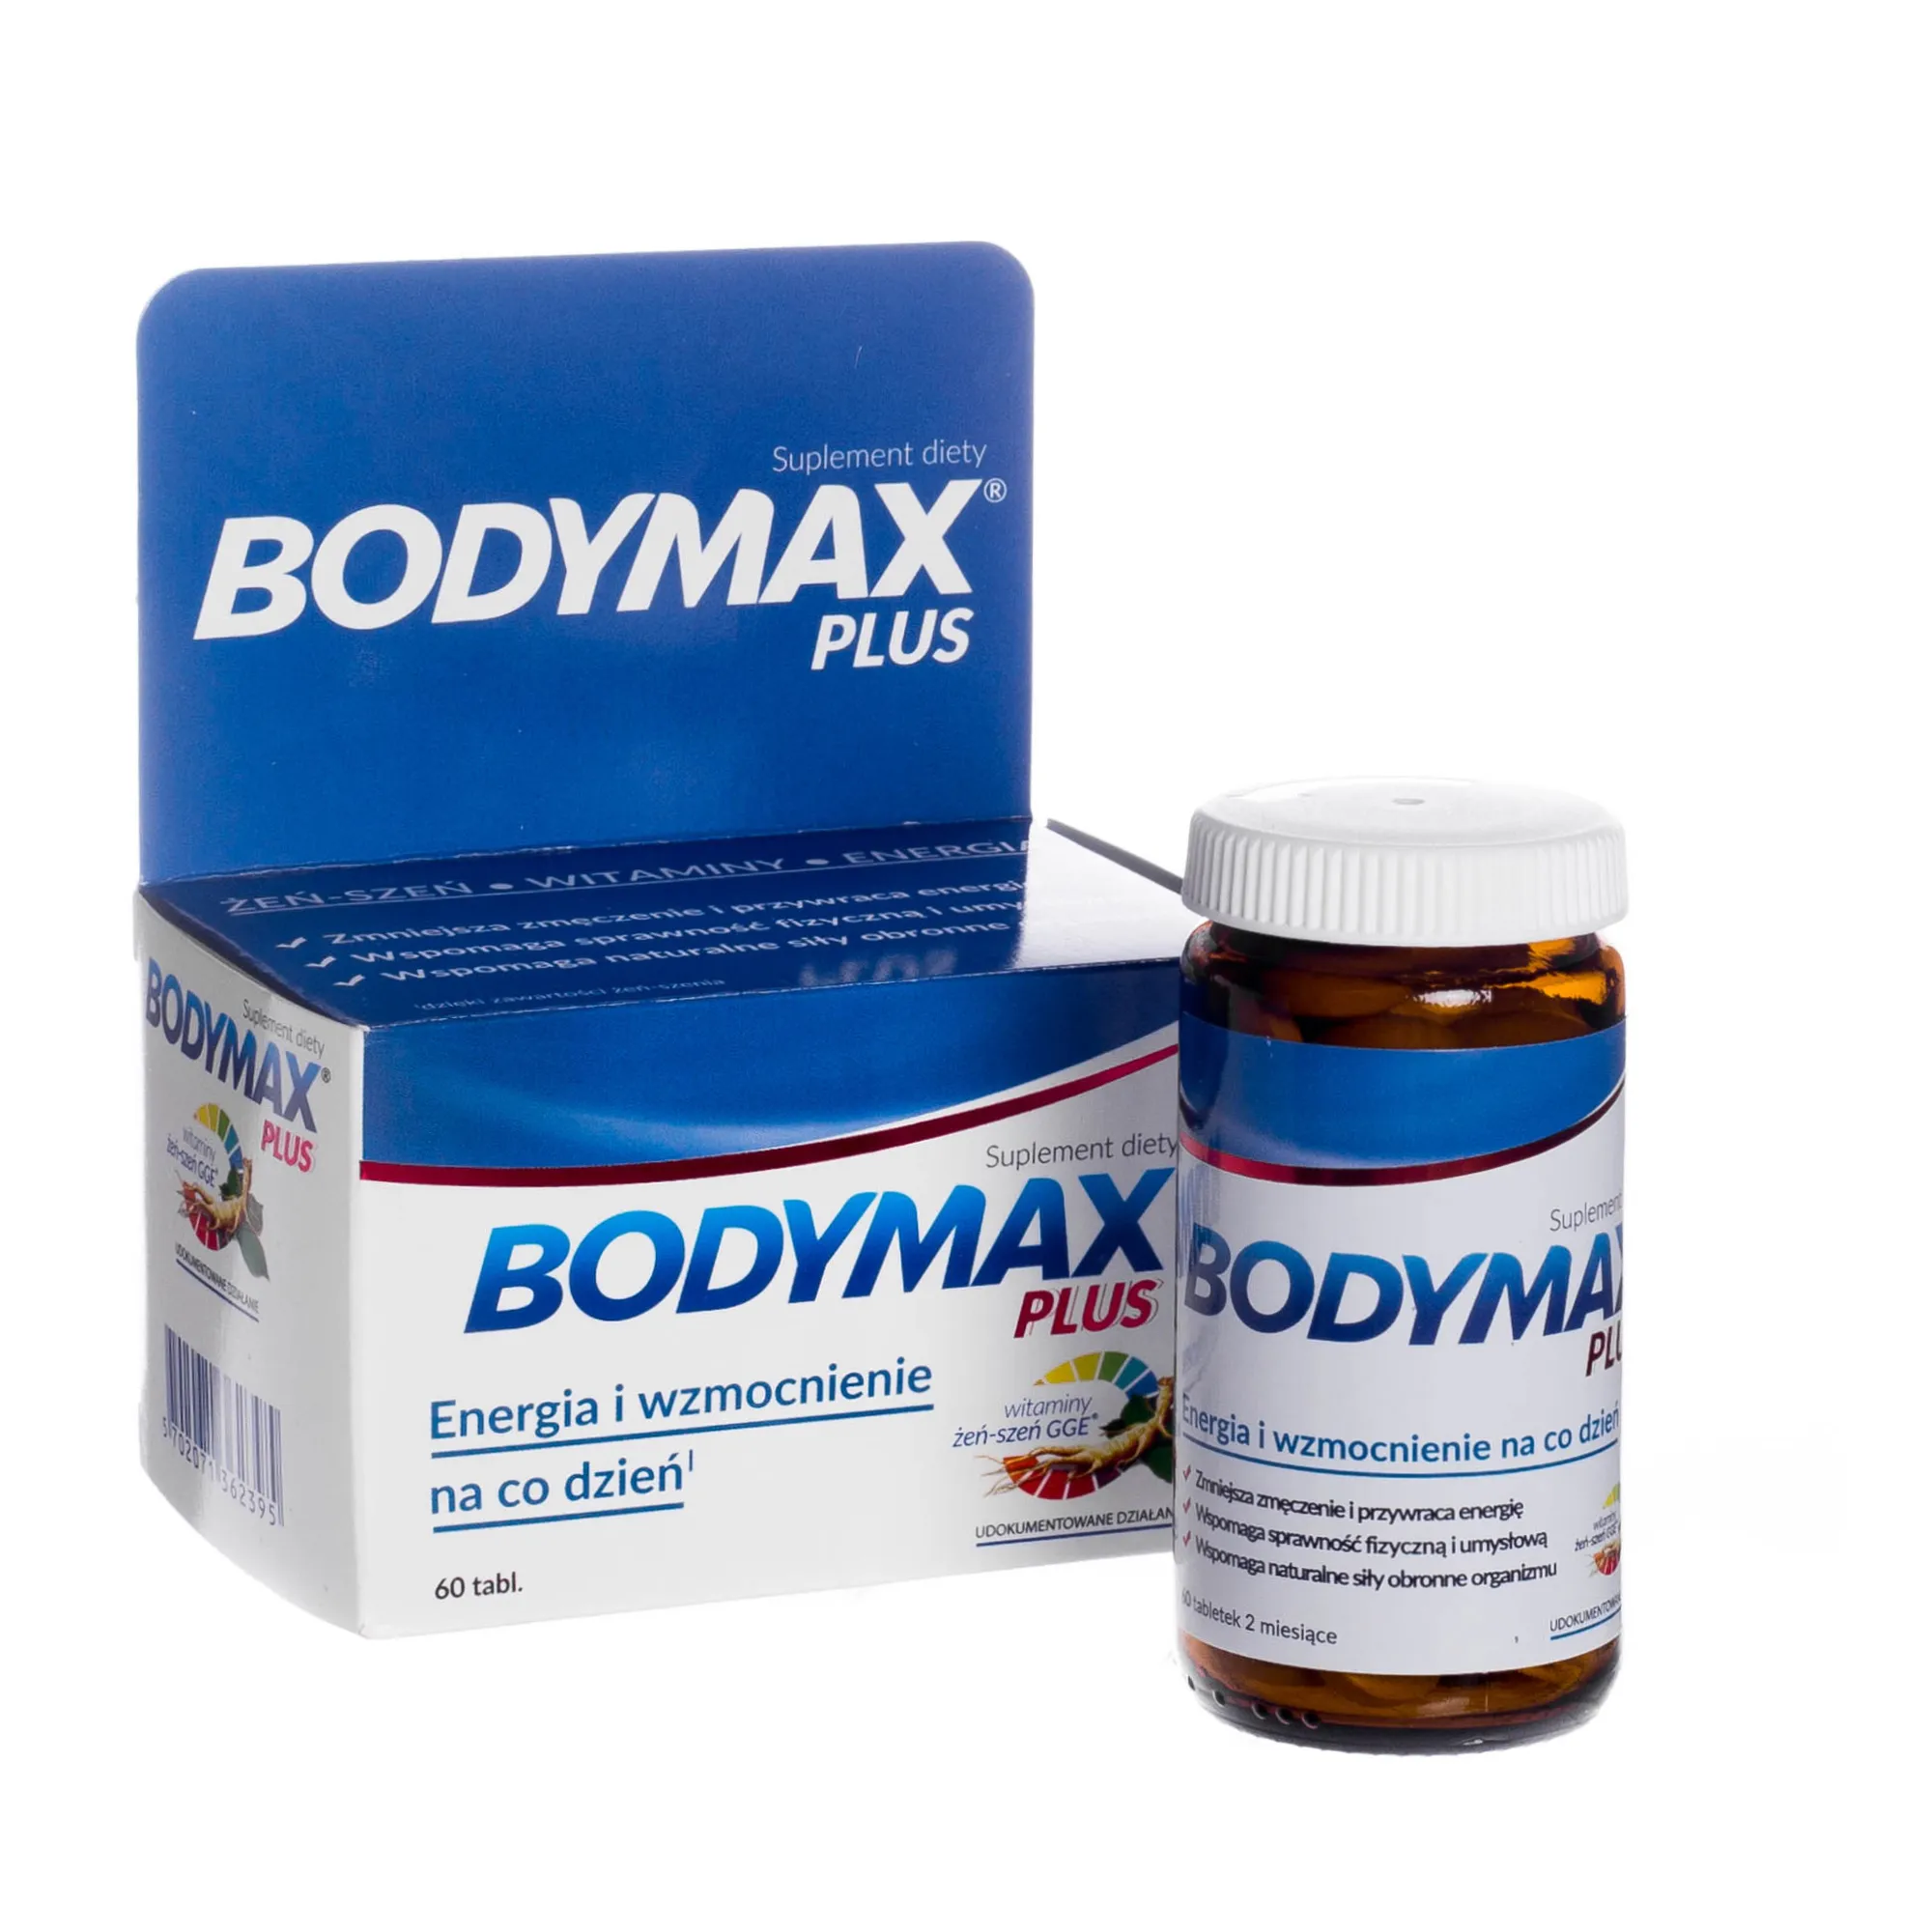 Bodymax PLUS - suplement diety o zwiększonej dawce. Zmniejszający zmęczenie i przywracający energię, 60 tabletek.